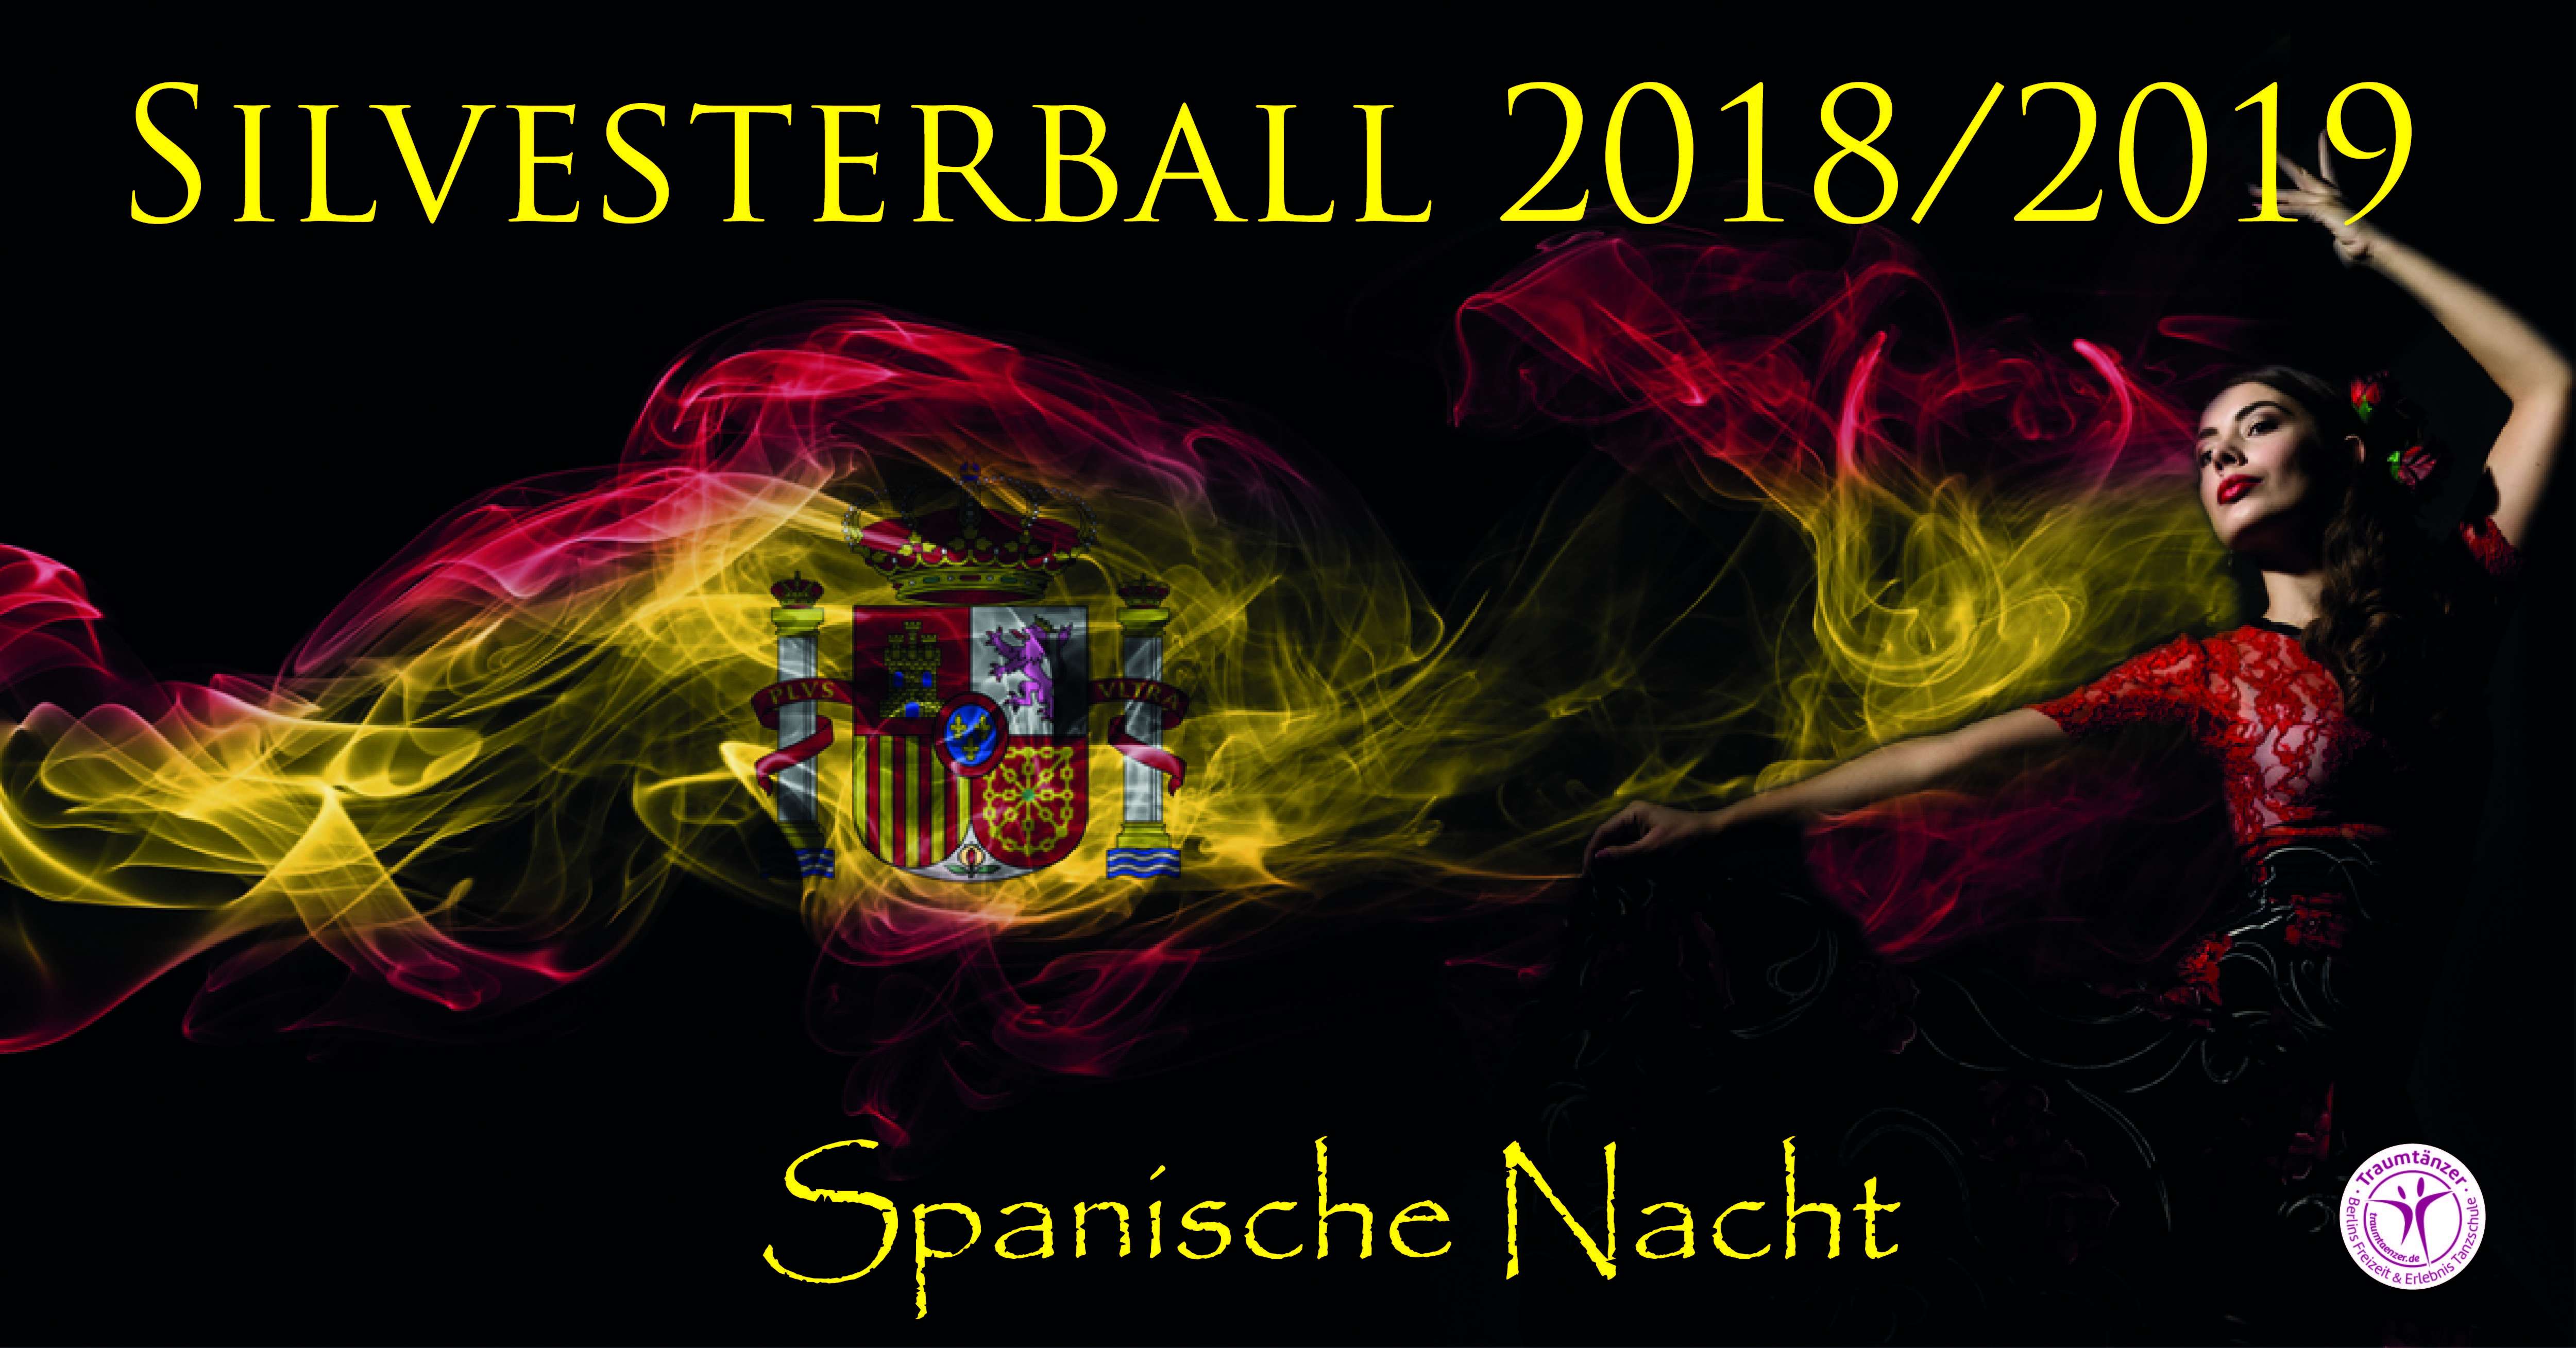 Silvesterball 2018/2019 - Spanische Nacht